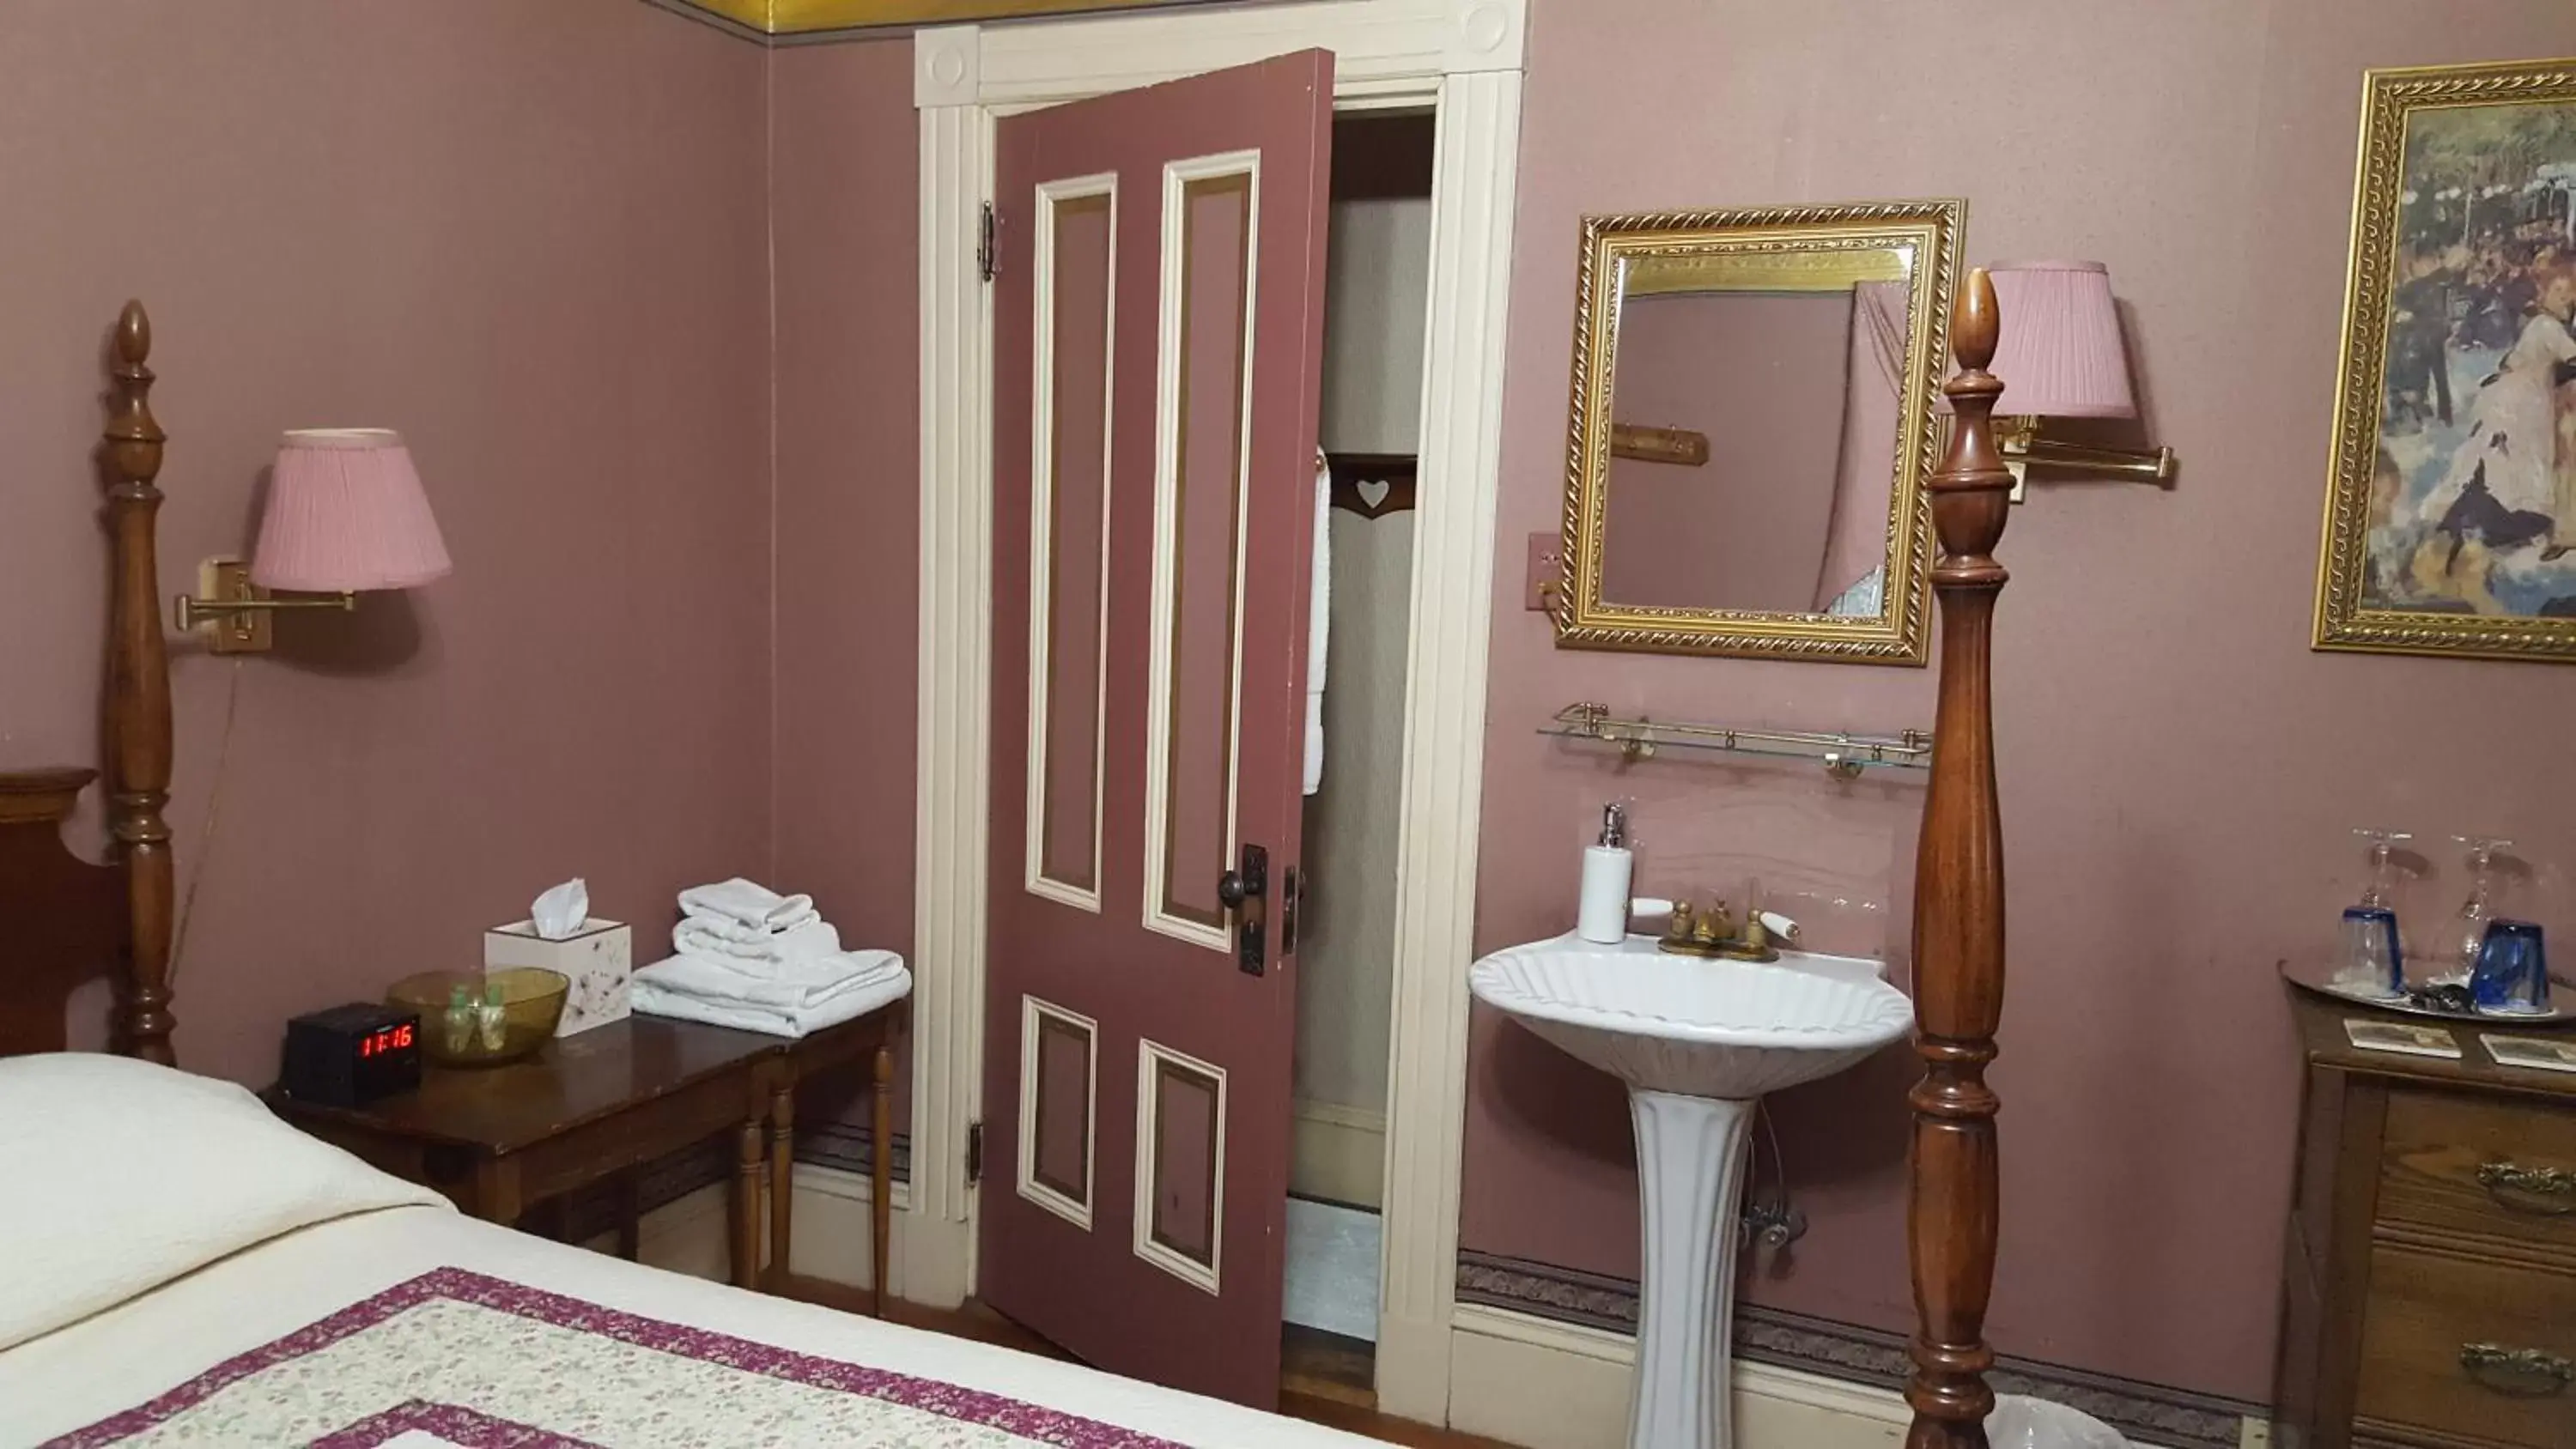 Bathroom in Holidae House Bed & Breakfast